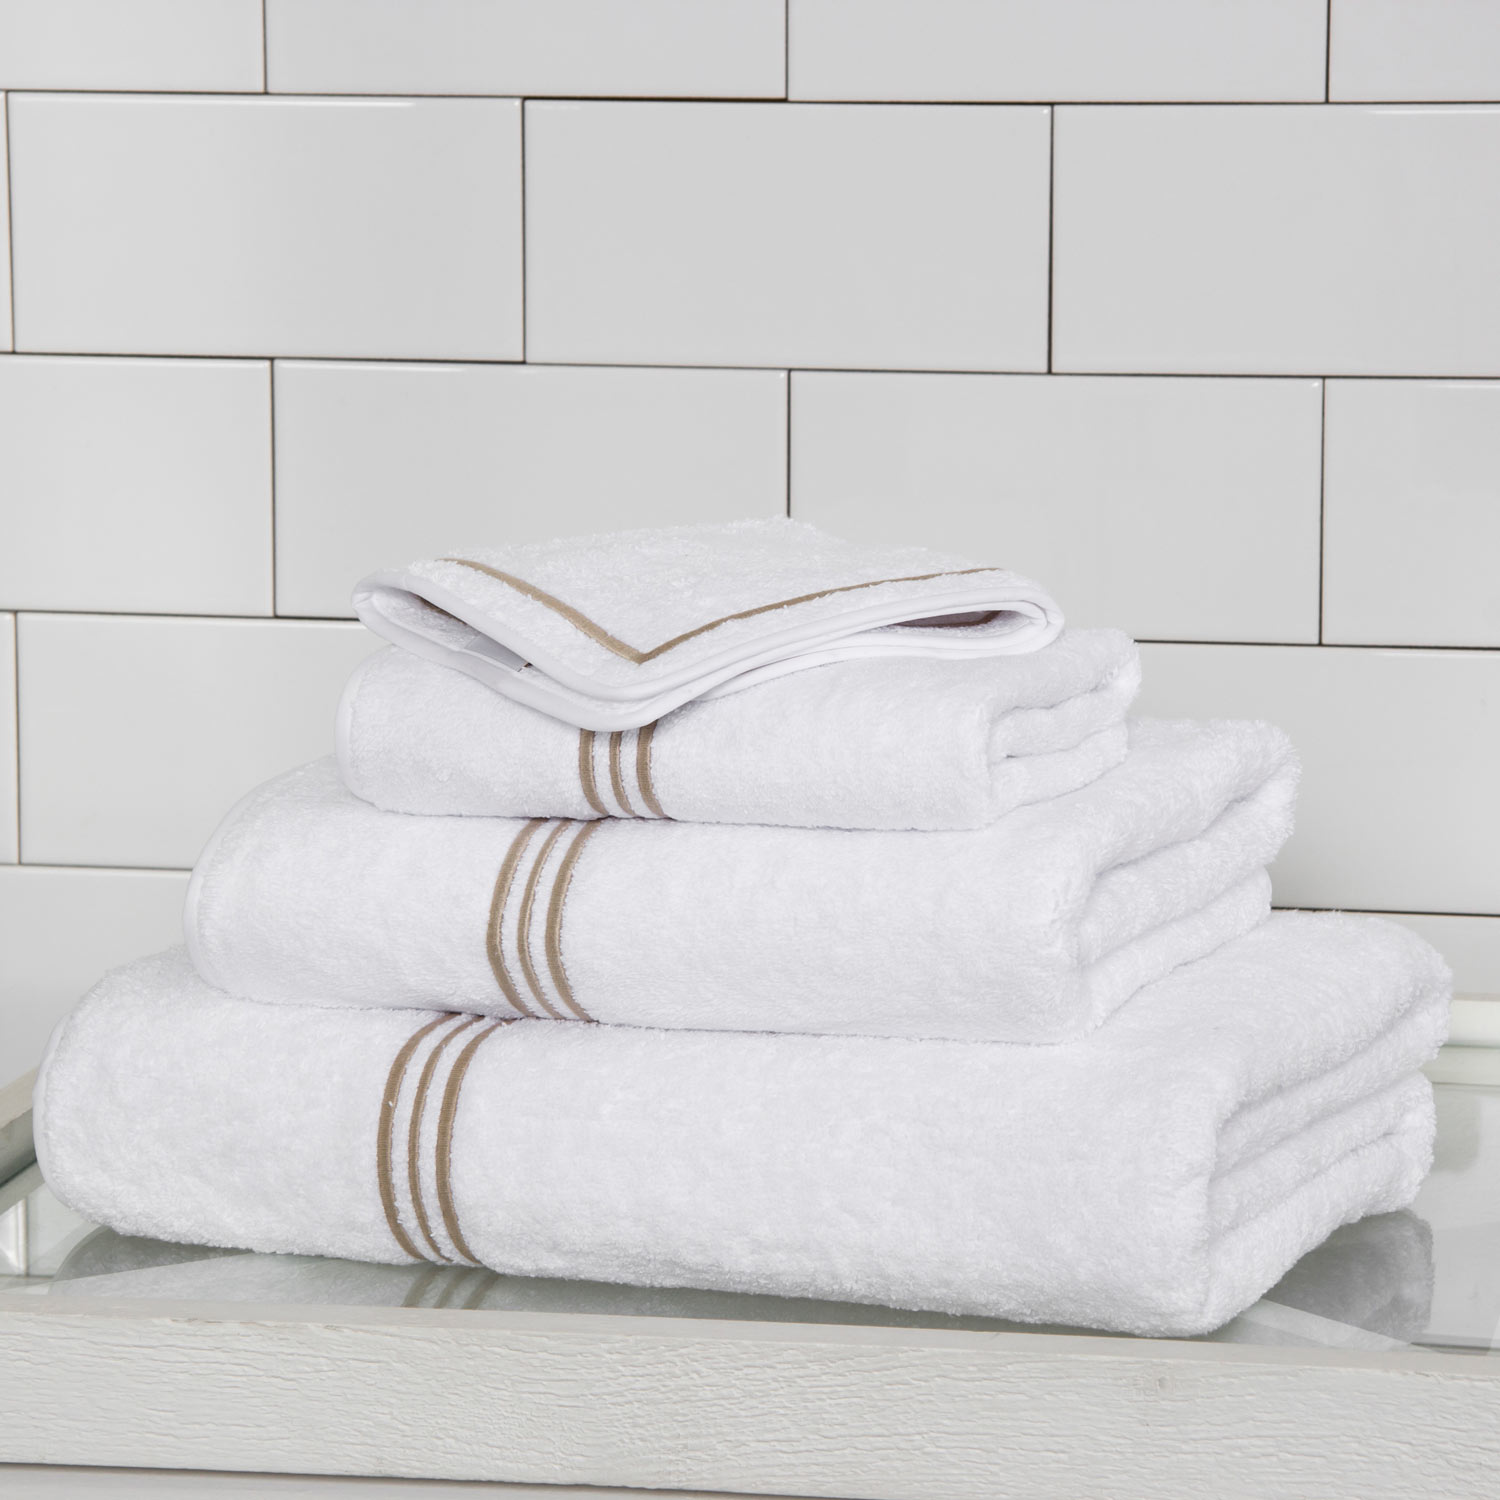 Полотенца краснодар. Полотенце. Белое полотенце. Белоснежные полотенца. Стильные полотенца в ванной.